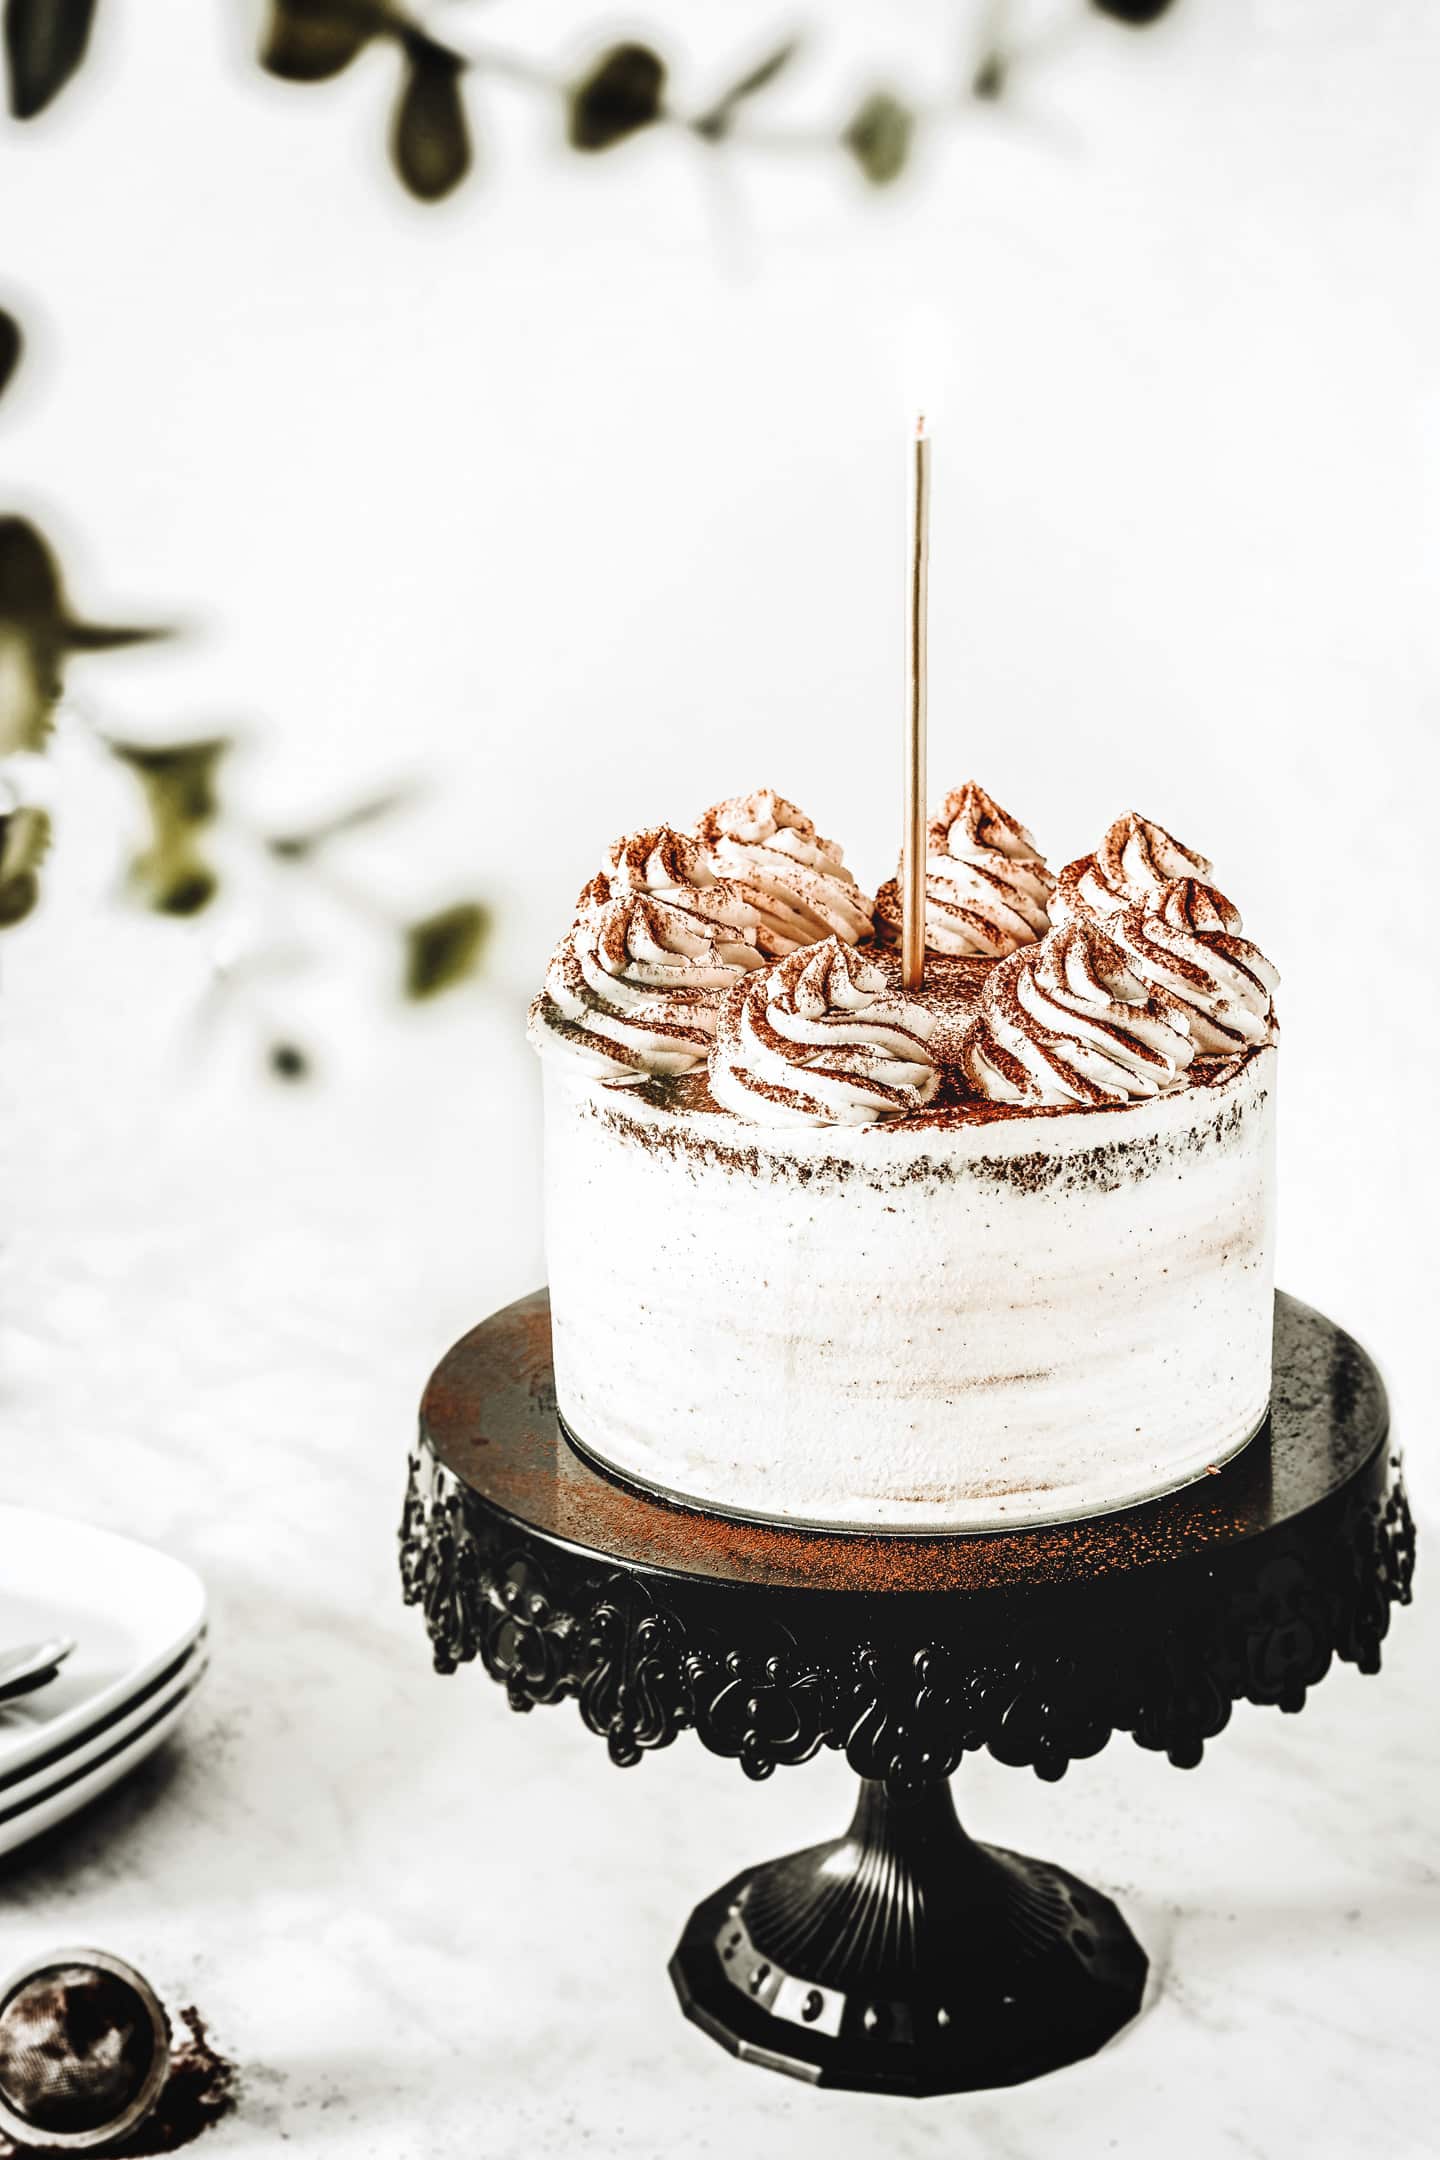 Best chocolate layer cake recipe with vanilla ganache